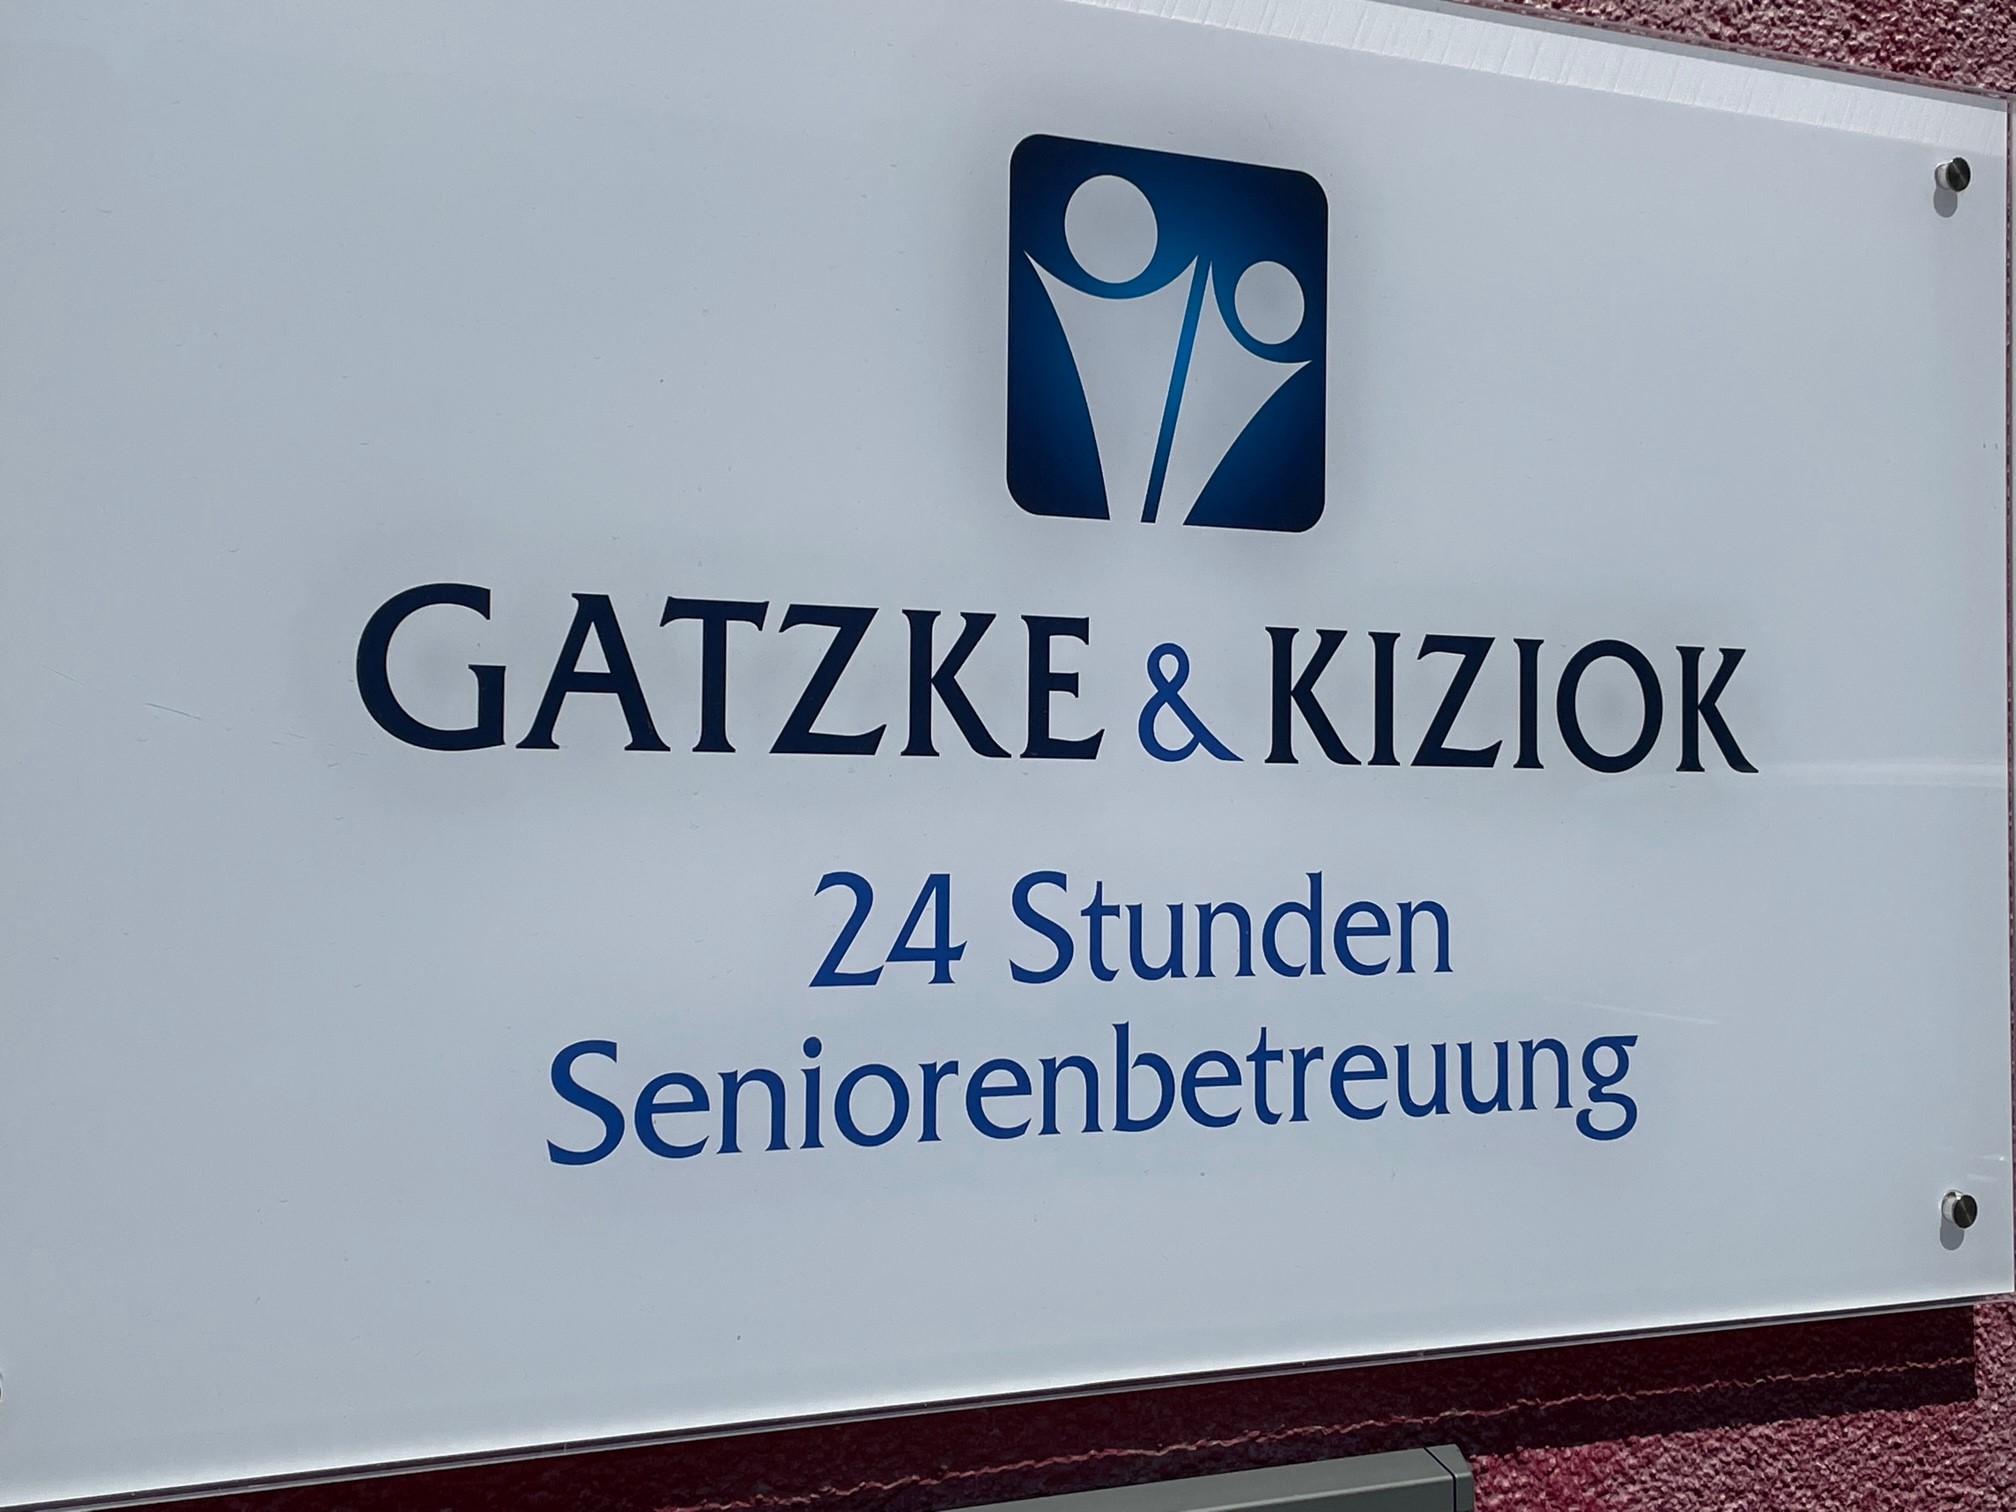 Gatzke & Kiziok GmbH I 24 Stunden Seniorenbetreuung